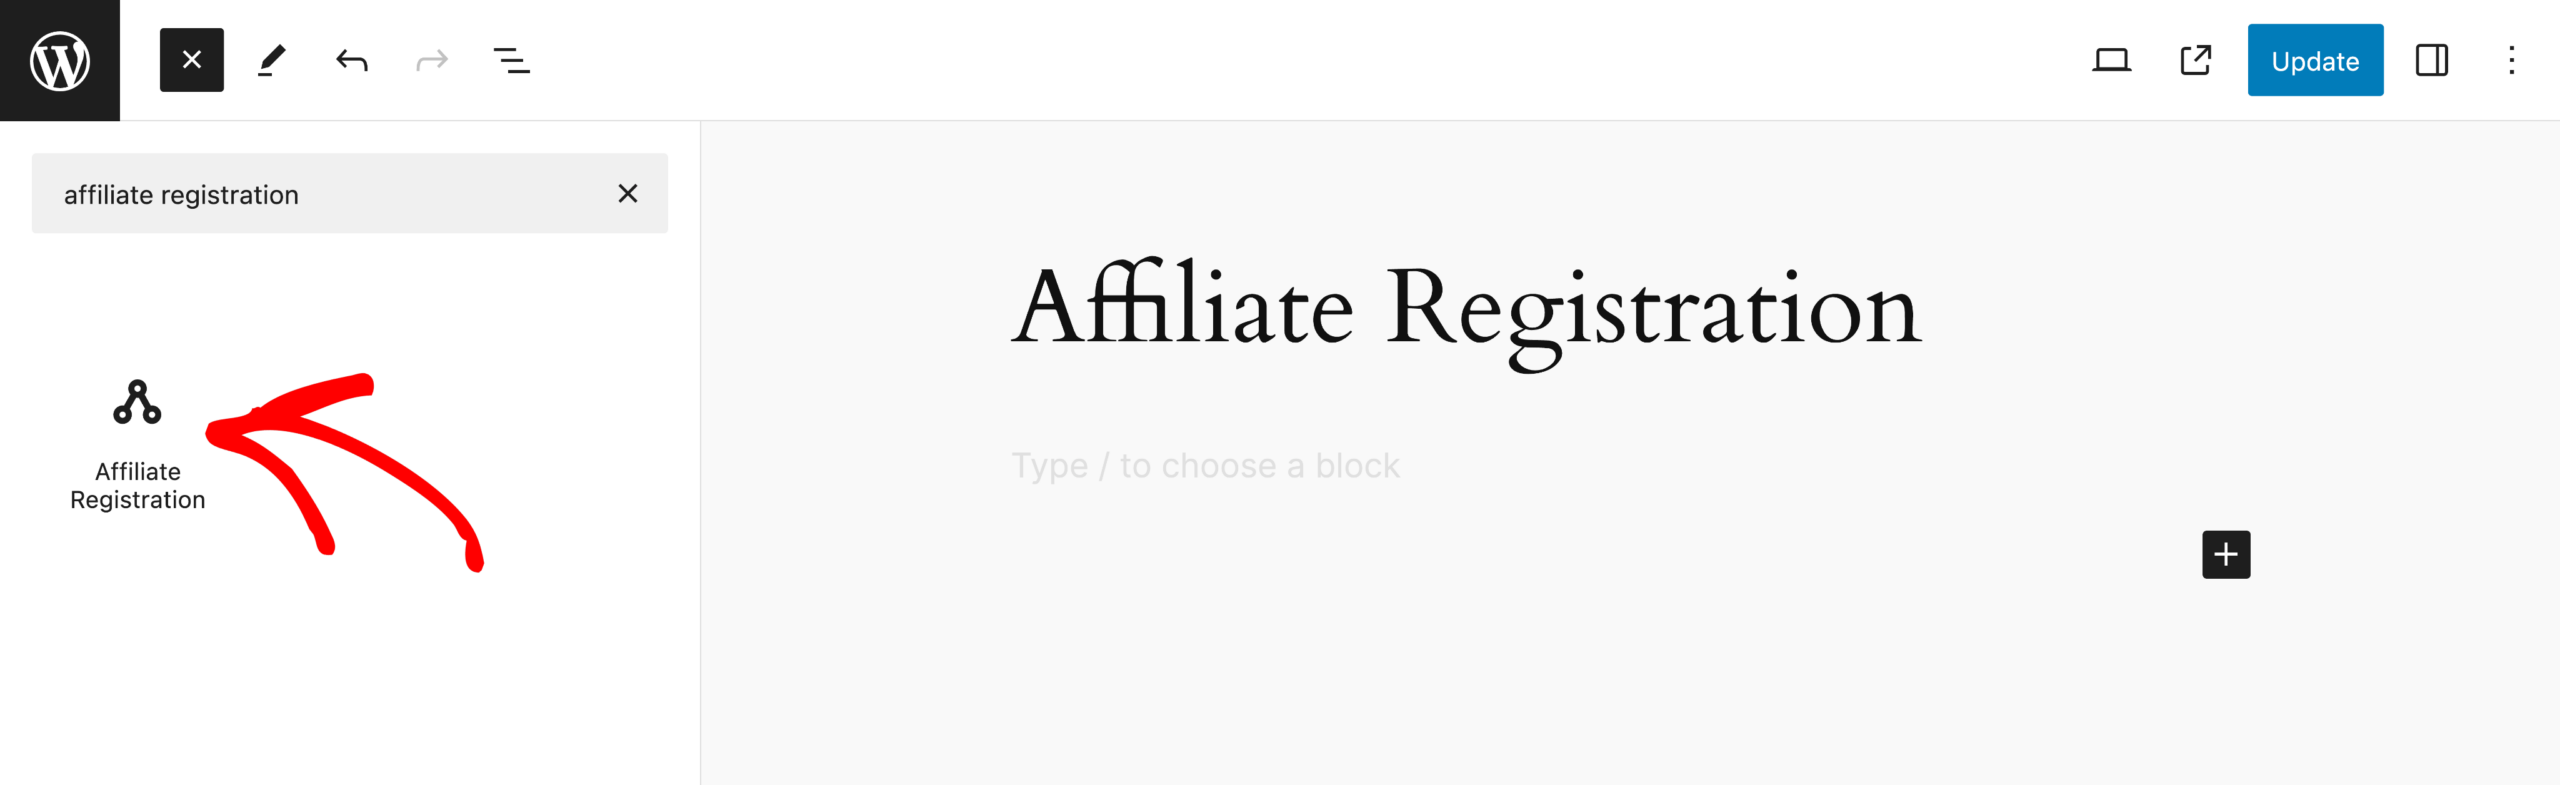 Affiliate Registration block